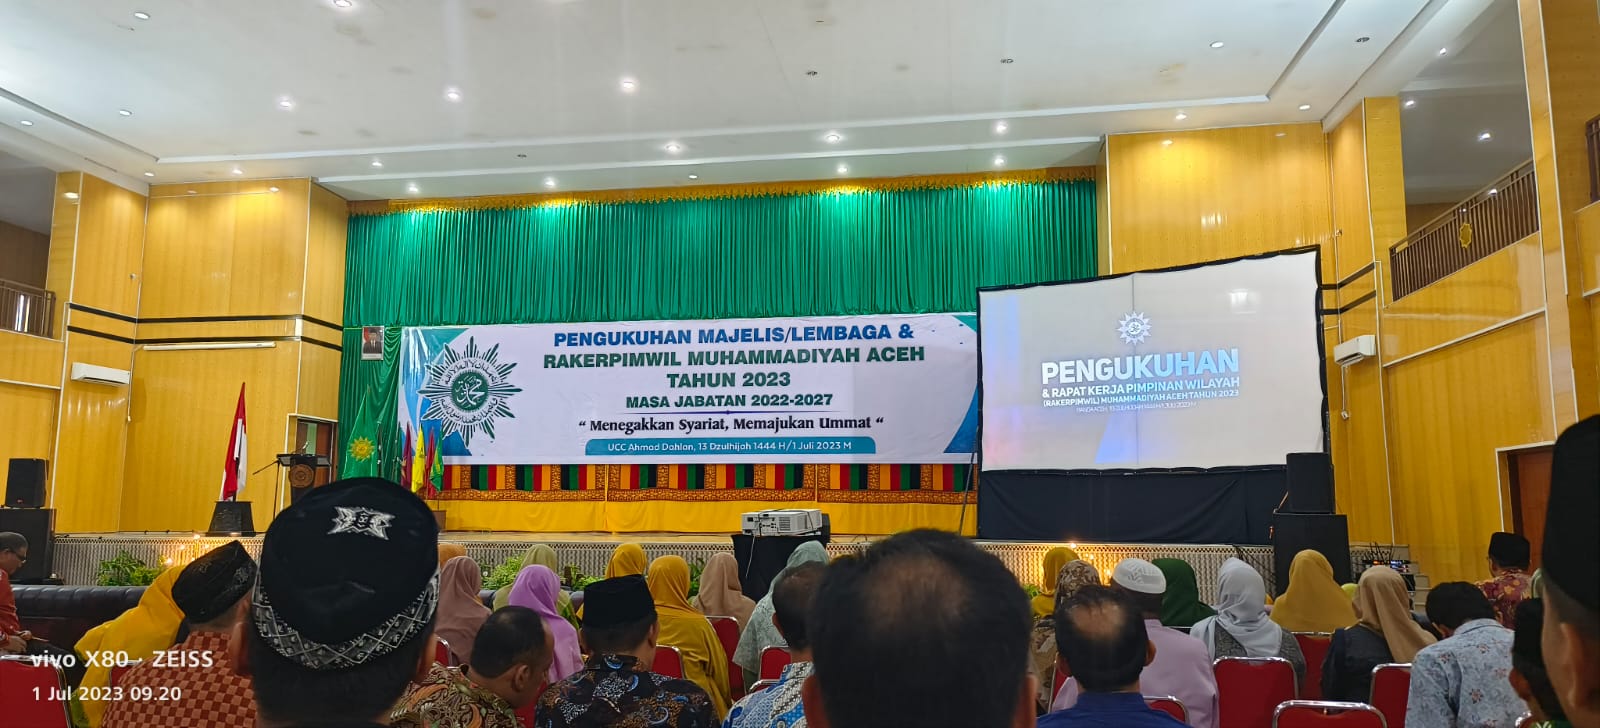 Hari Ini, PW Muhammadiyah Aceh Gelar Rapat Kerja Pimpinan Wilayah